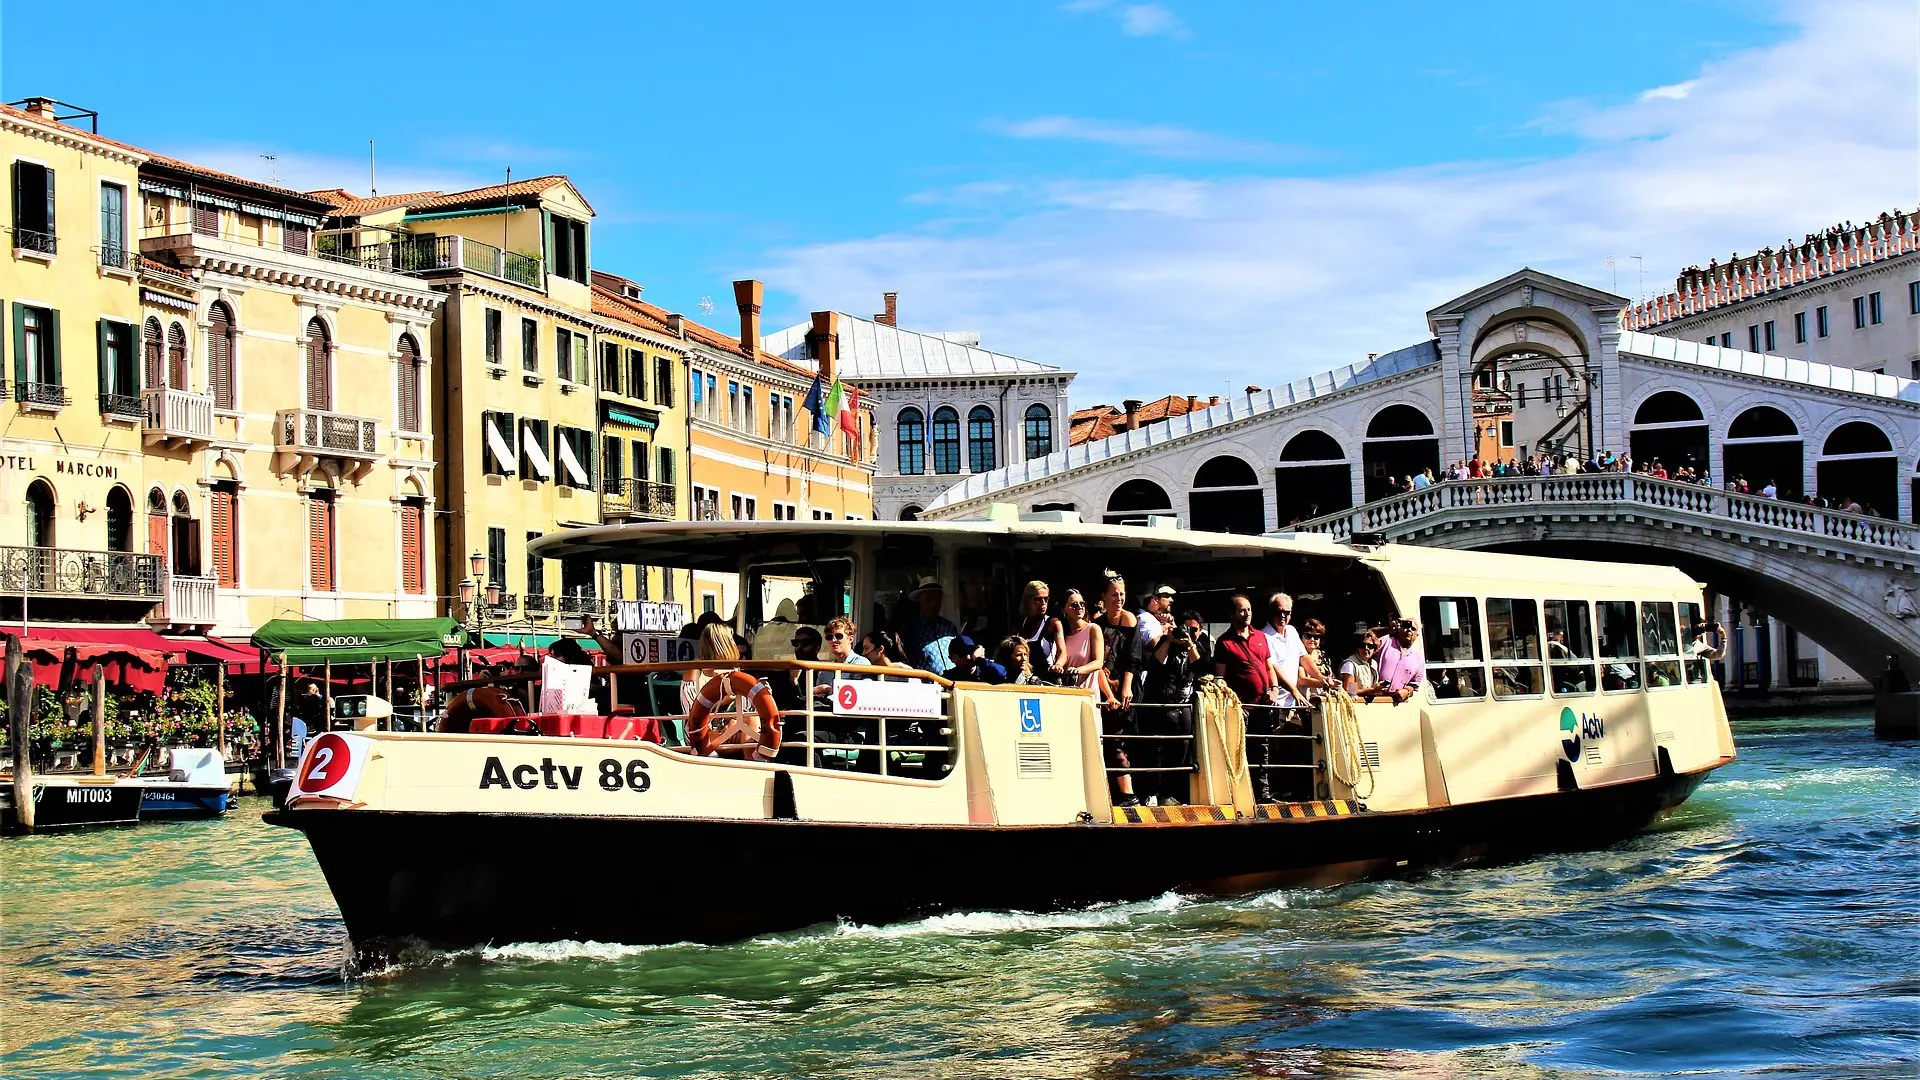 El vaporetto en Venecia es parte esencial de la vida cotidiana 